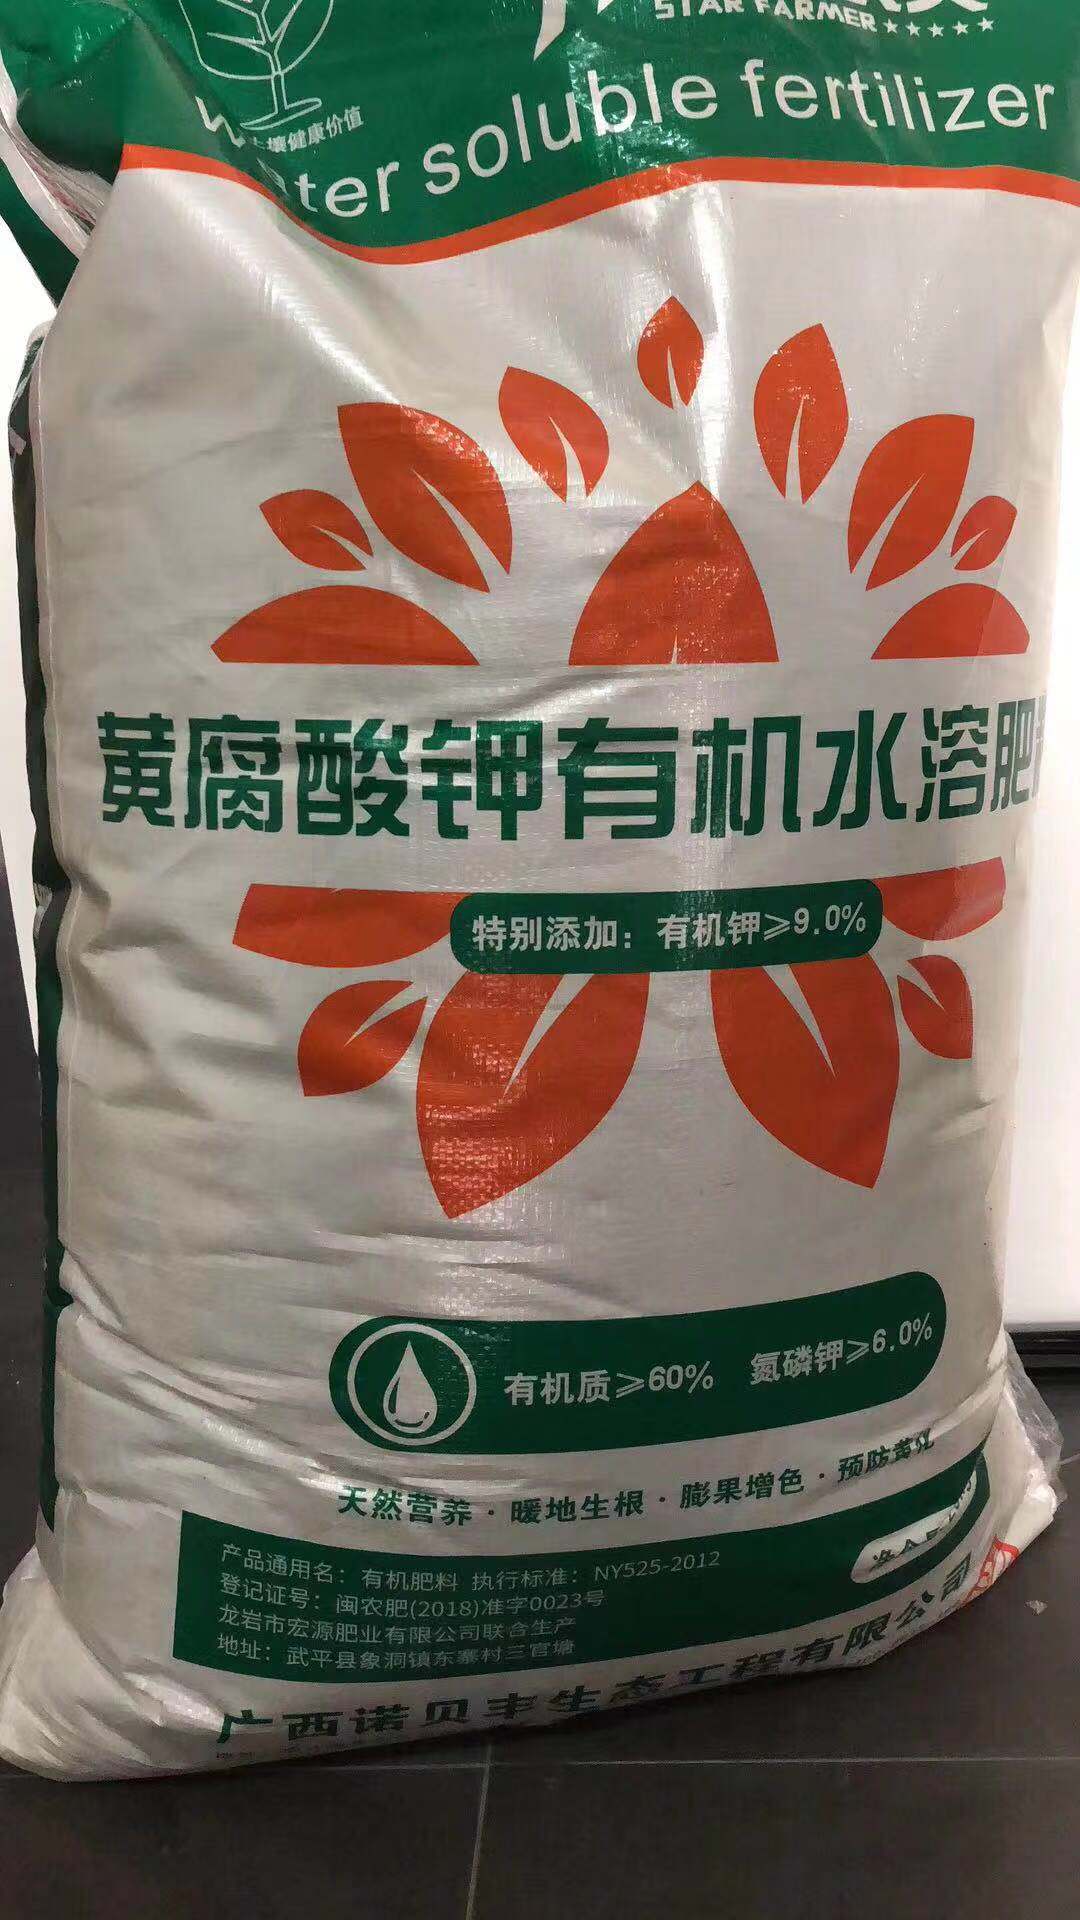 直销广西黄腐酸钾 五星农夫黄腐酸钾 水溶肥 有机肥